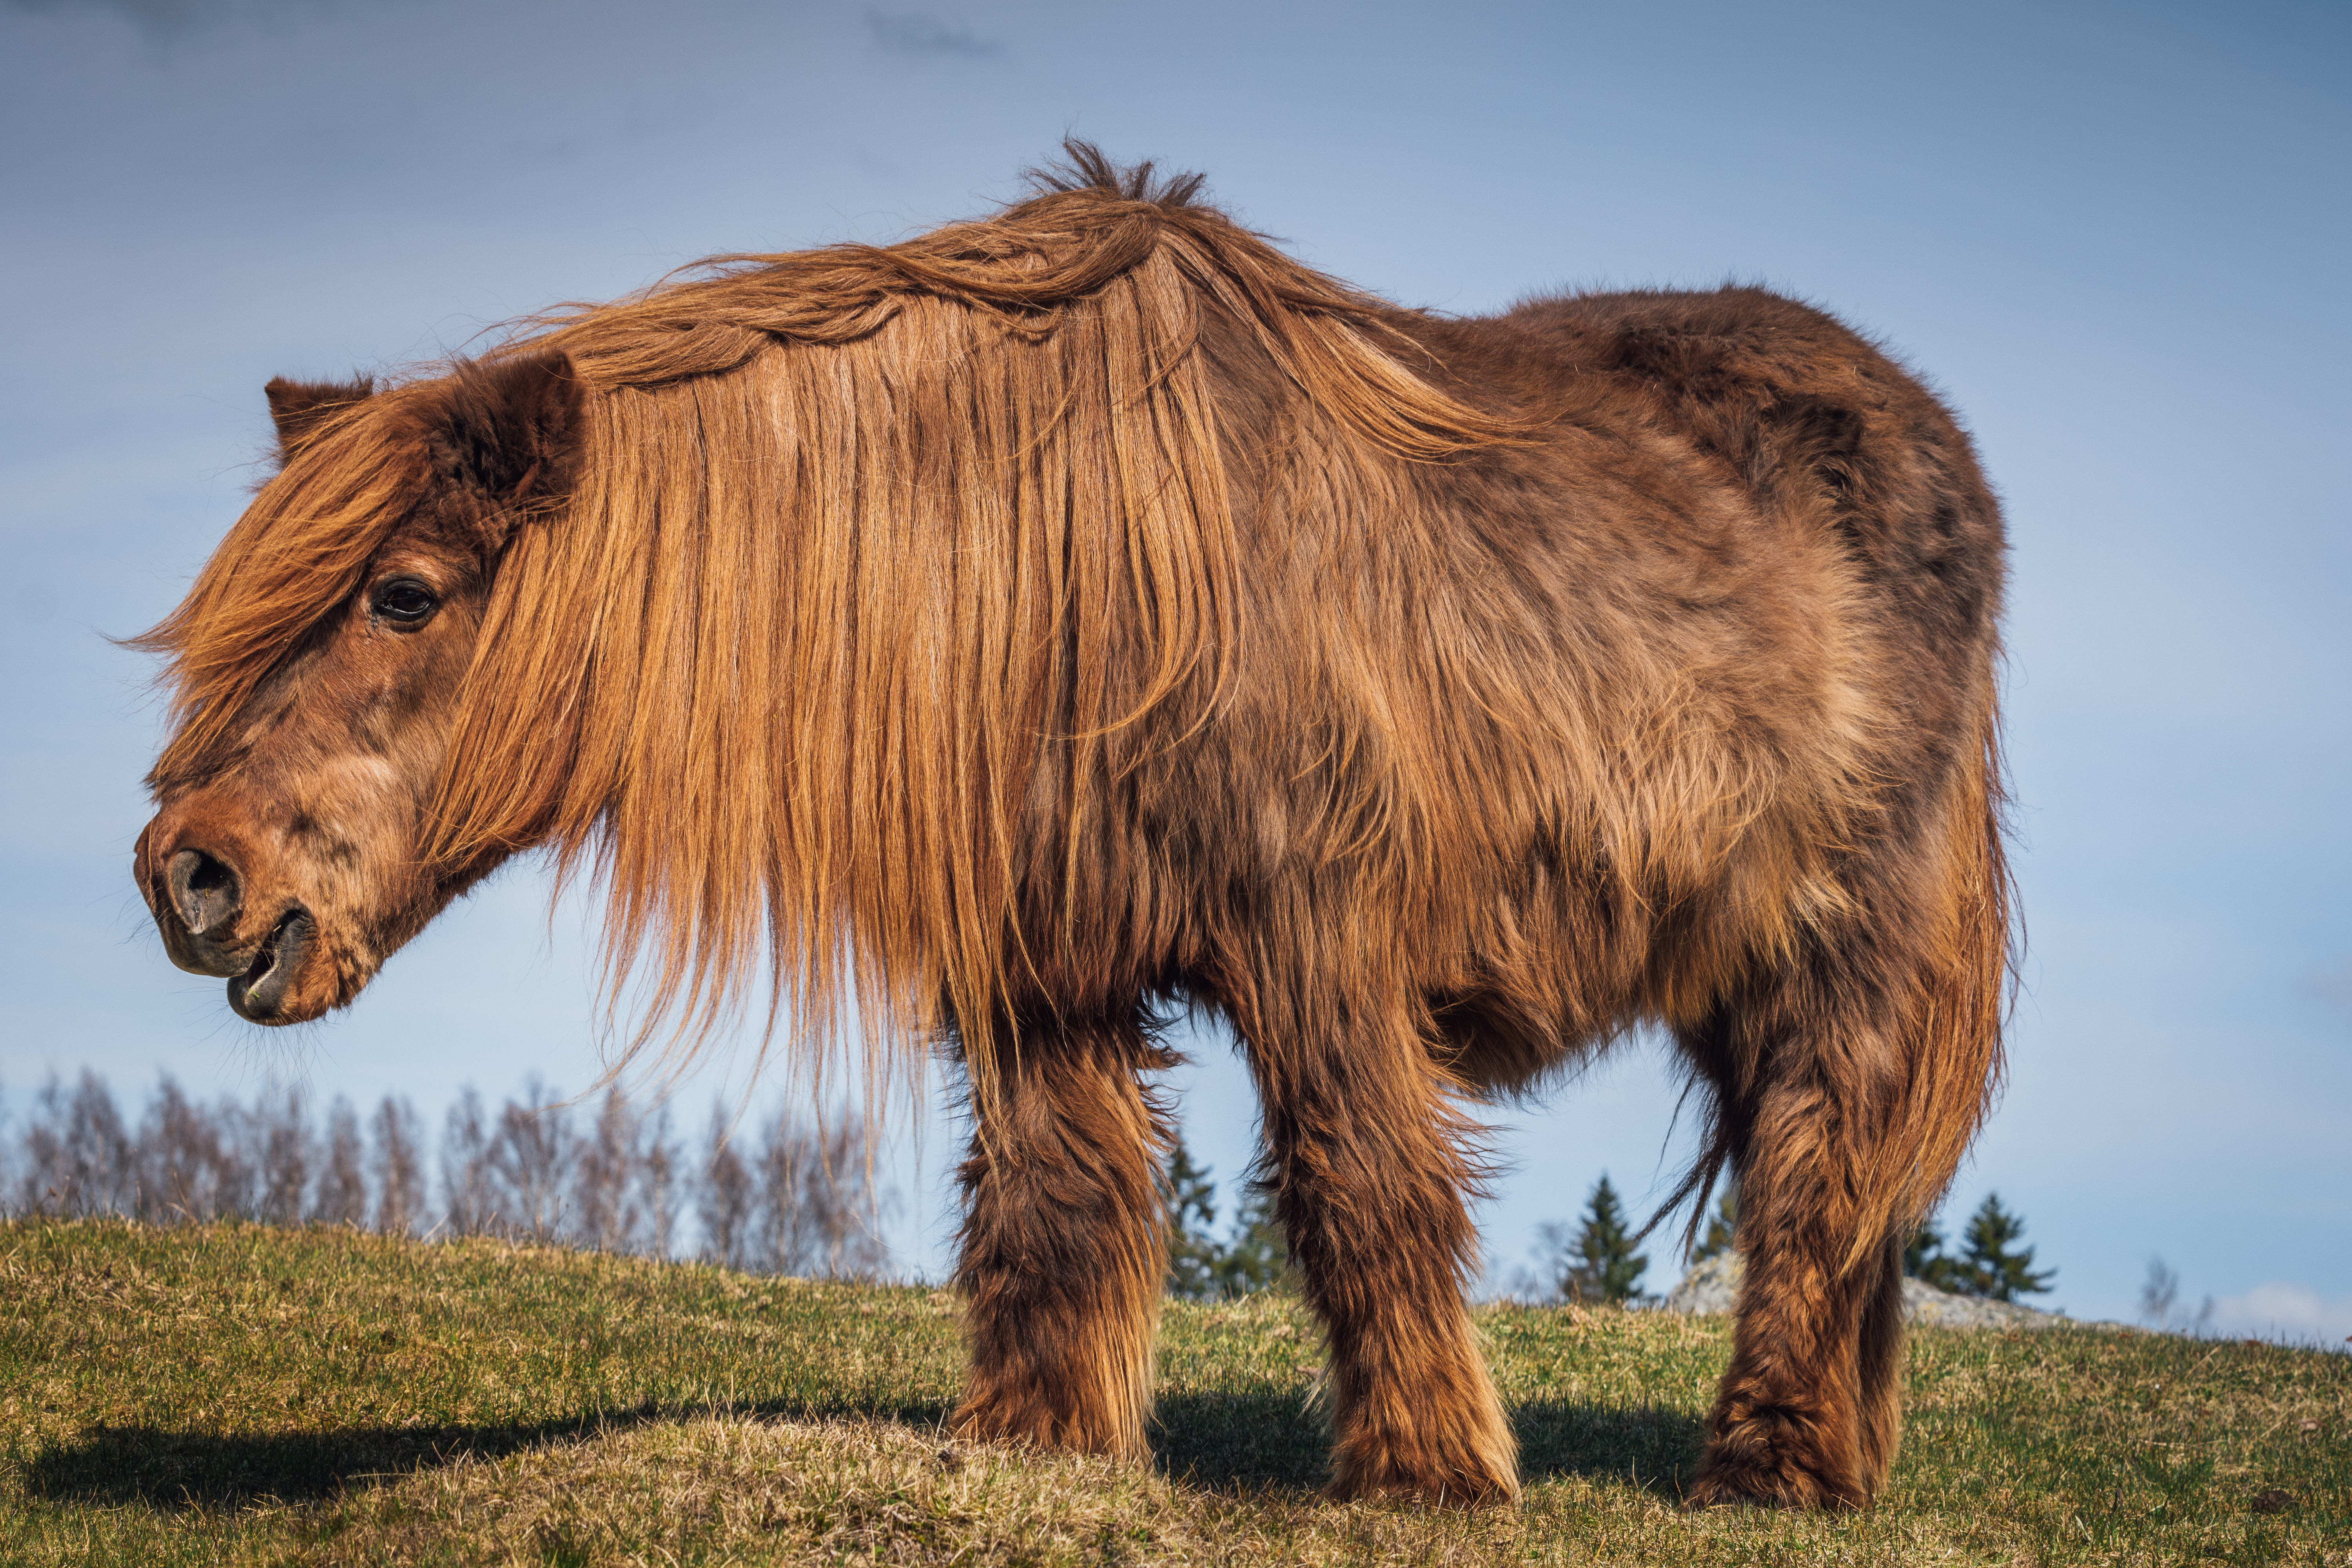 An older, hairy chestnut pony.